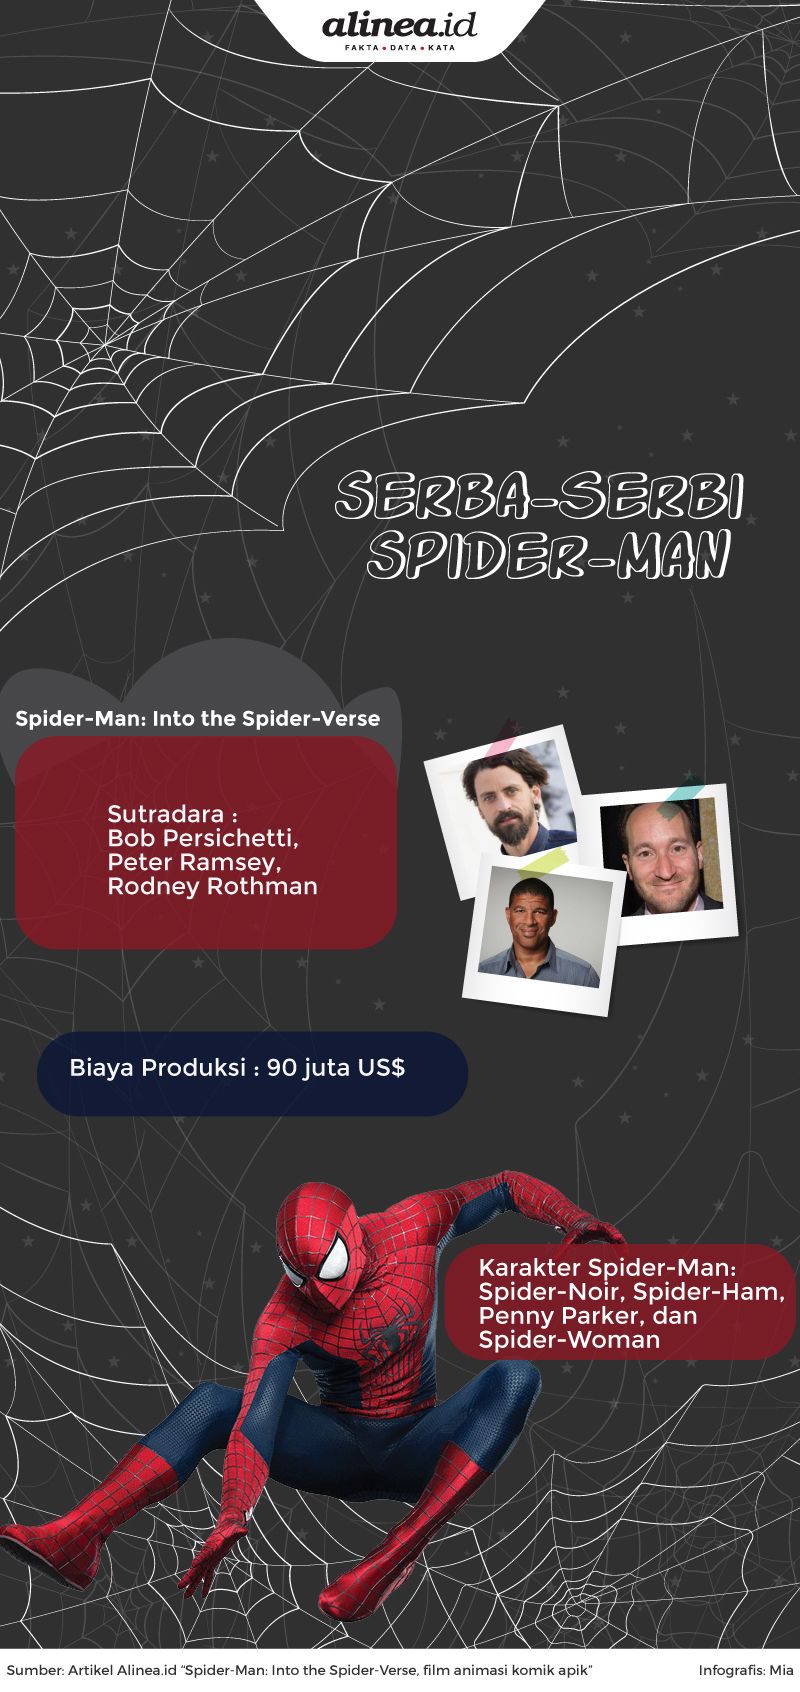 Serba-serbi Spider-Man. Alinea.id